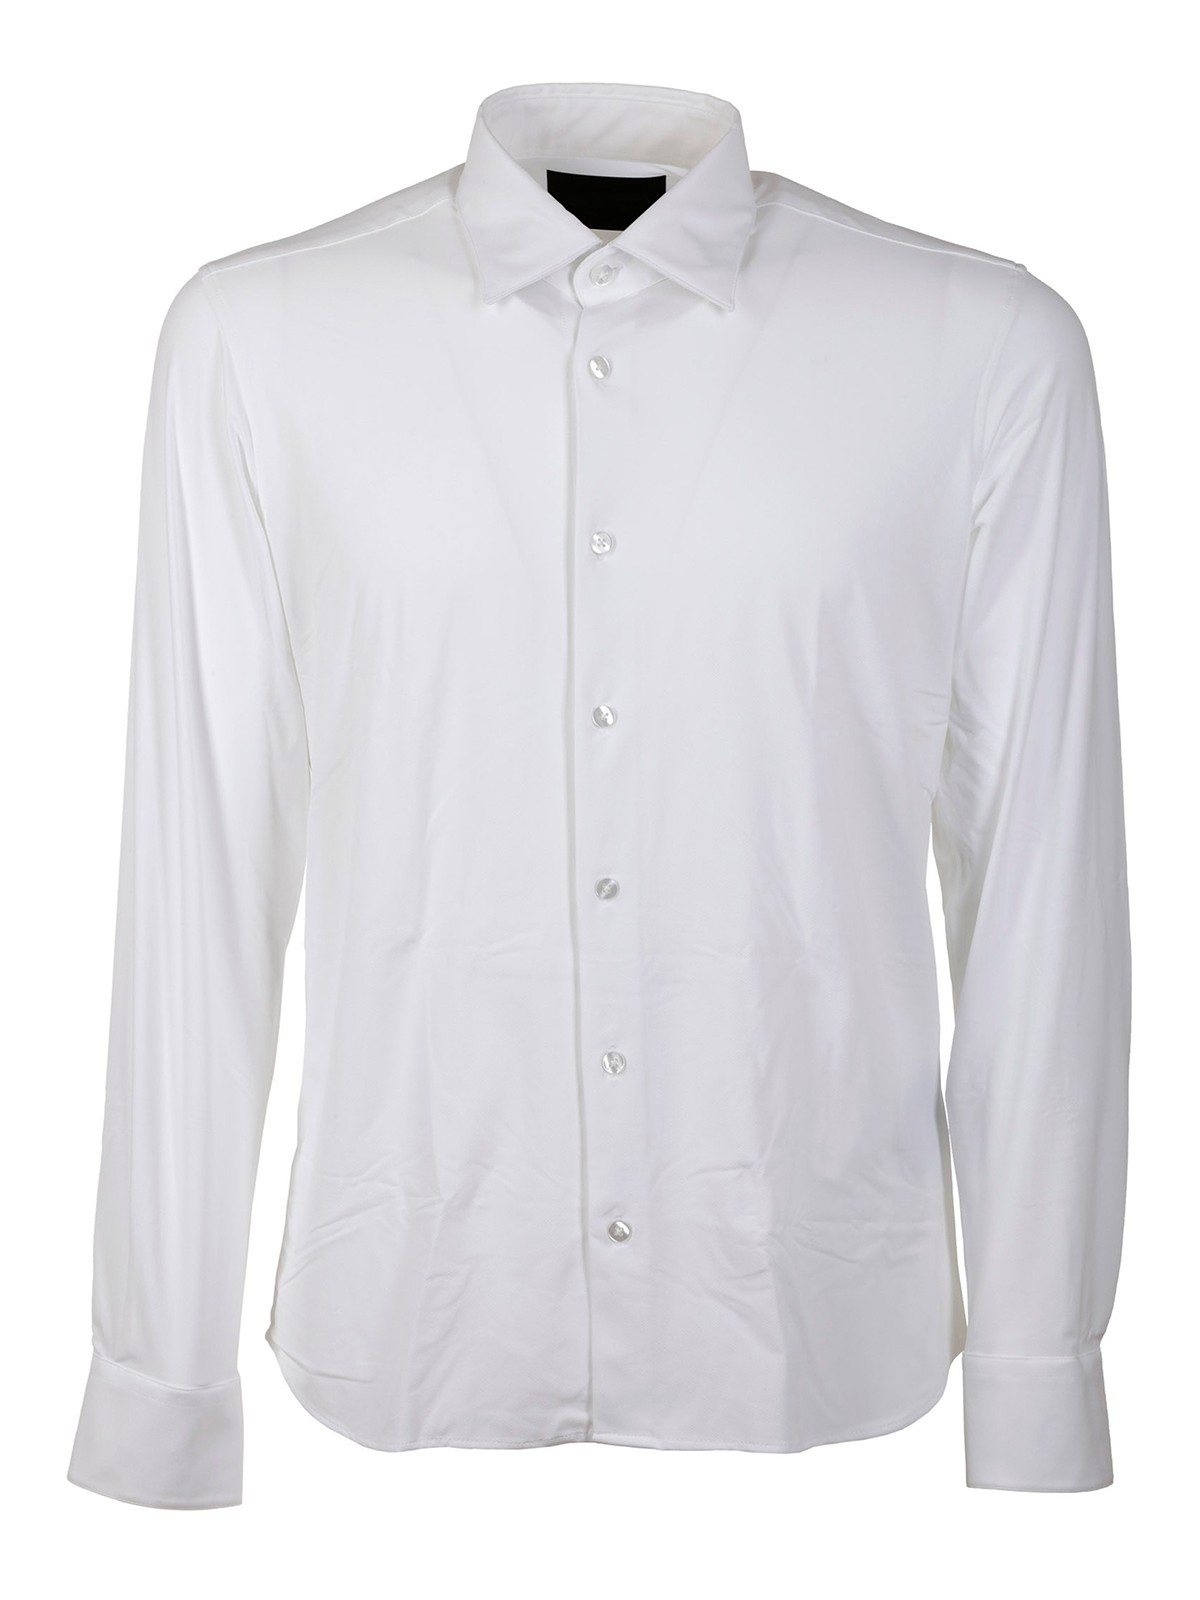 Shirts RRD Roberto Ricci Designs - Shirt Oxford shirt - 2209109